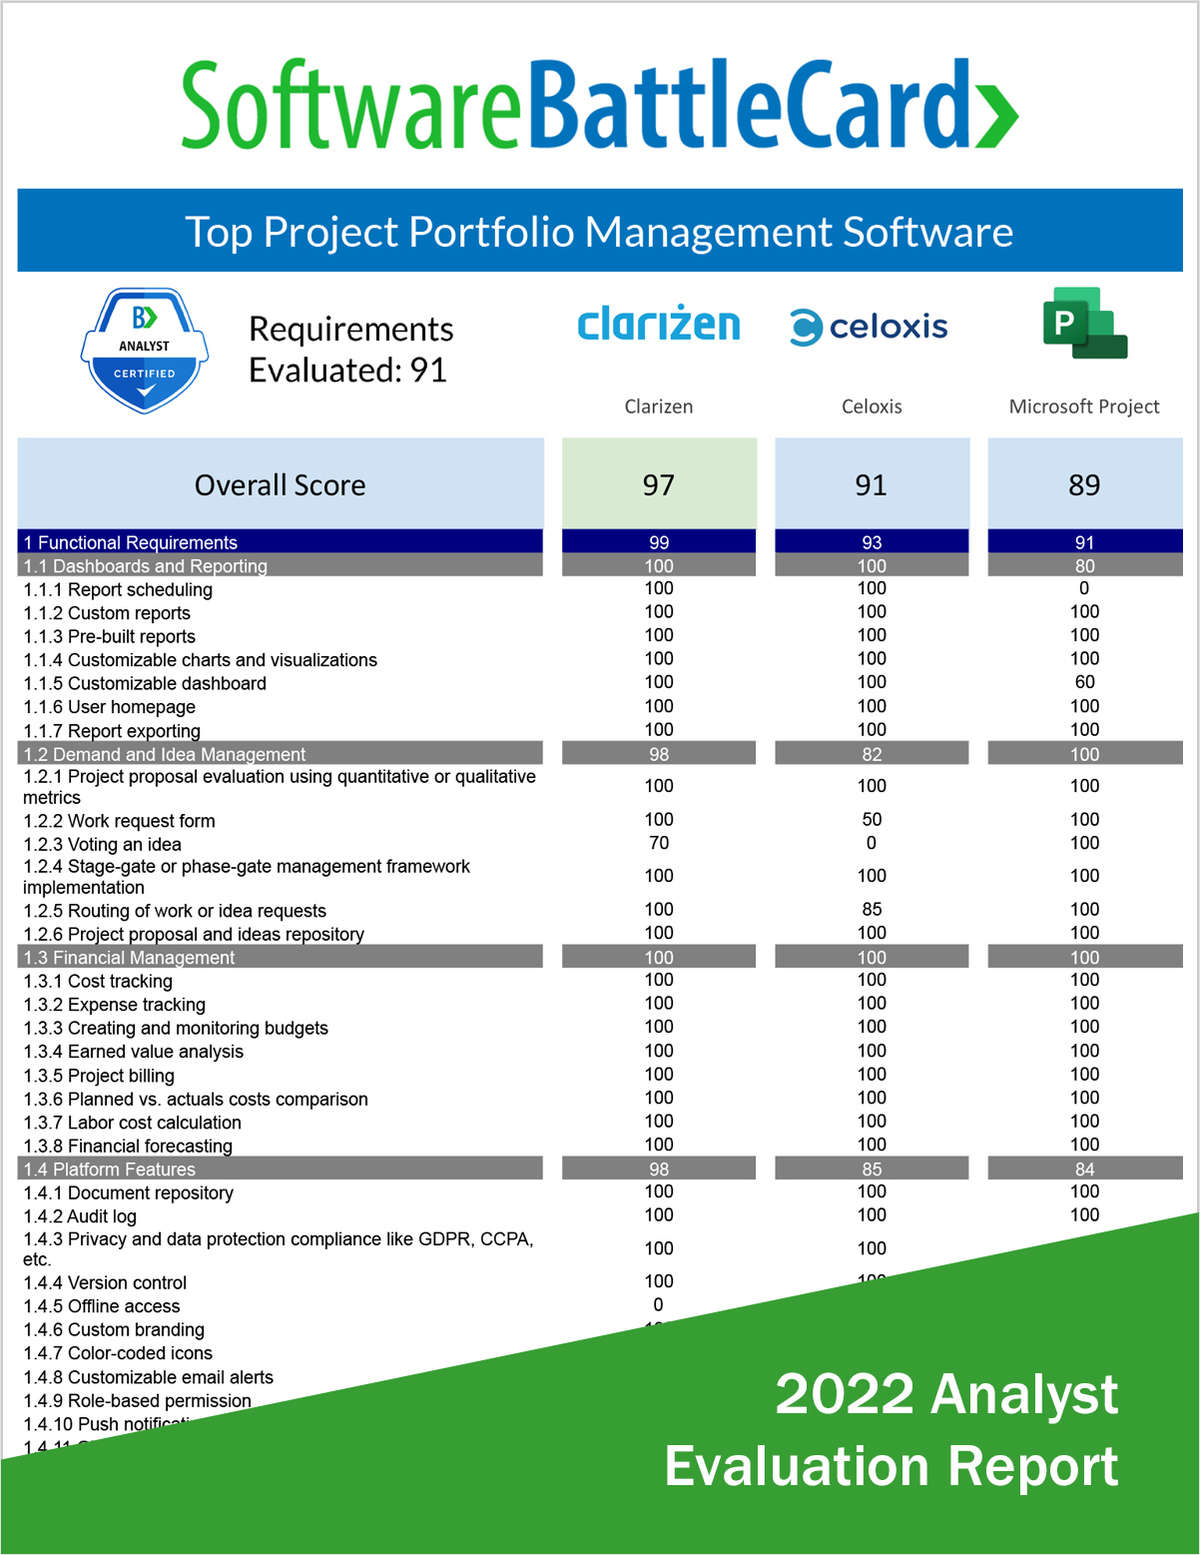 Top Project Portfolio Management (PPM) Software BattleCard--Clarizen vs. Celoxis vs. Microsoft Project